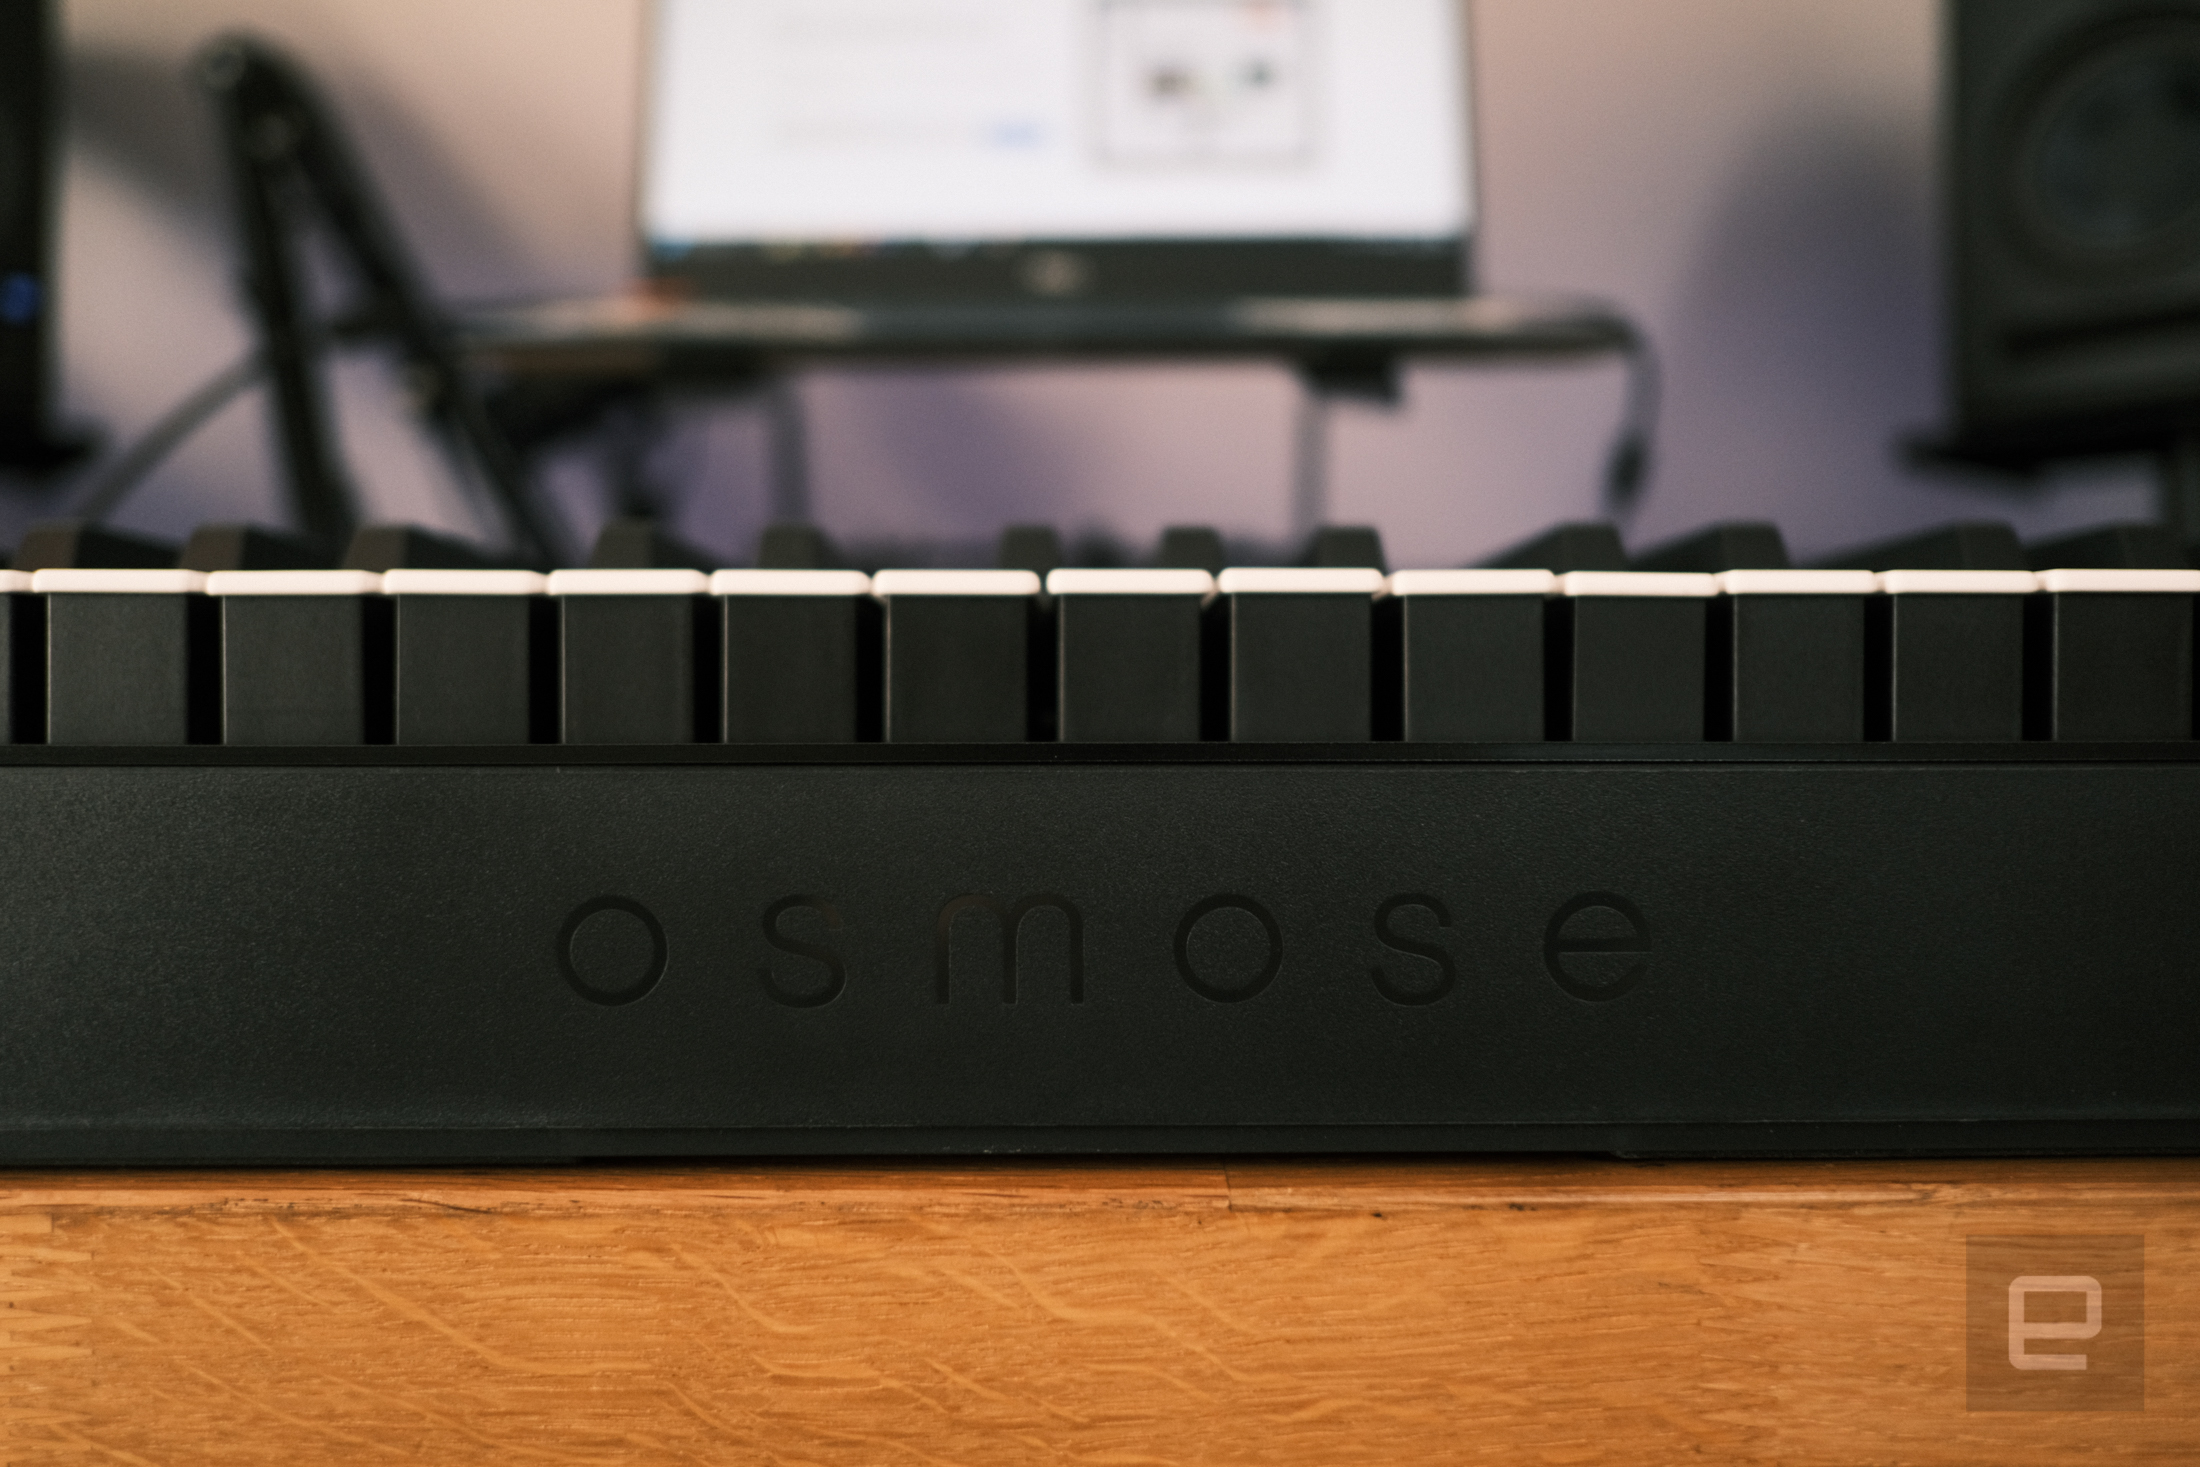 Close-up of the expressive E Osmose logo.